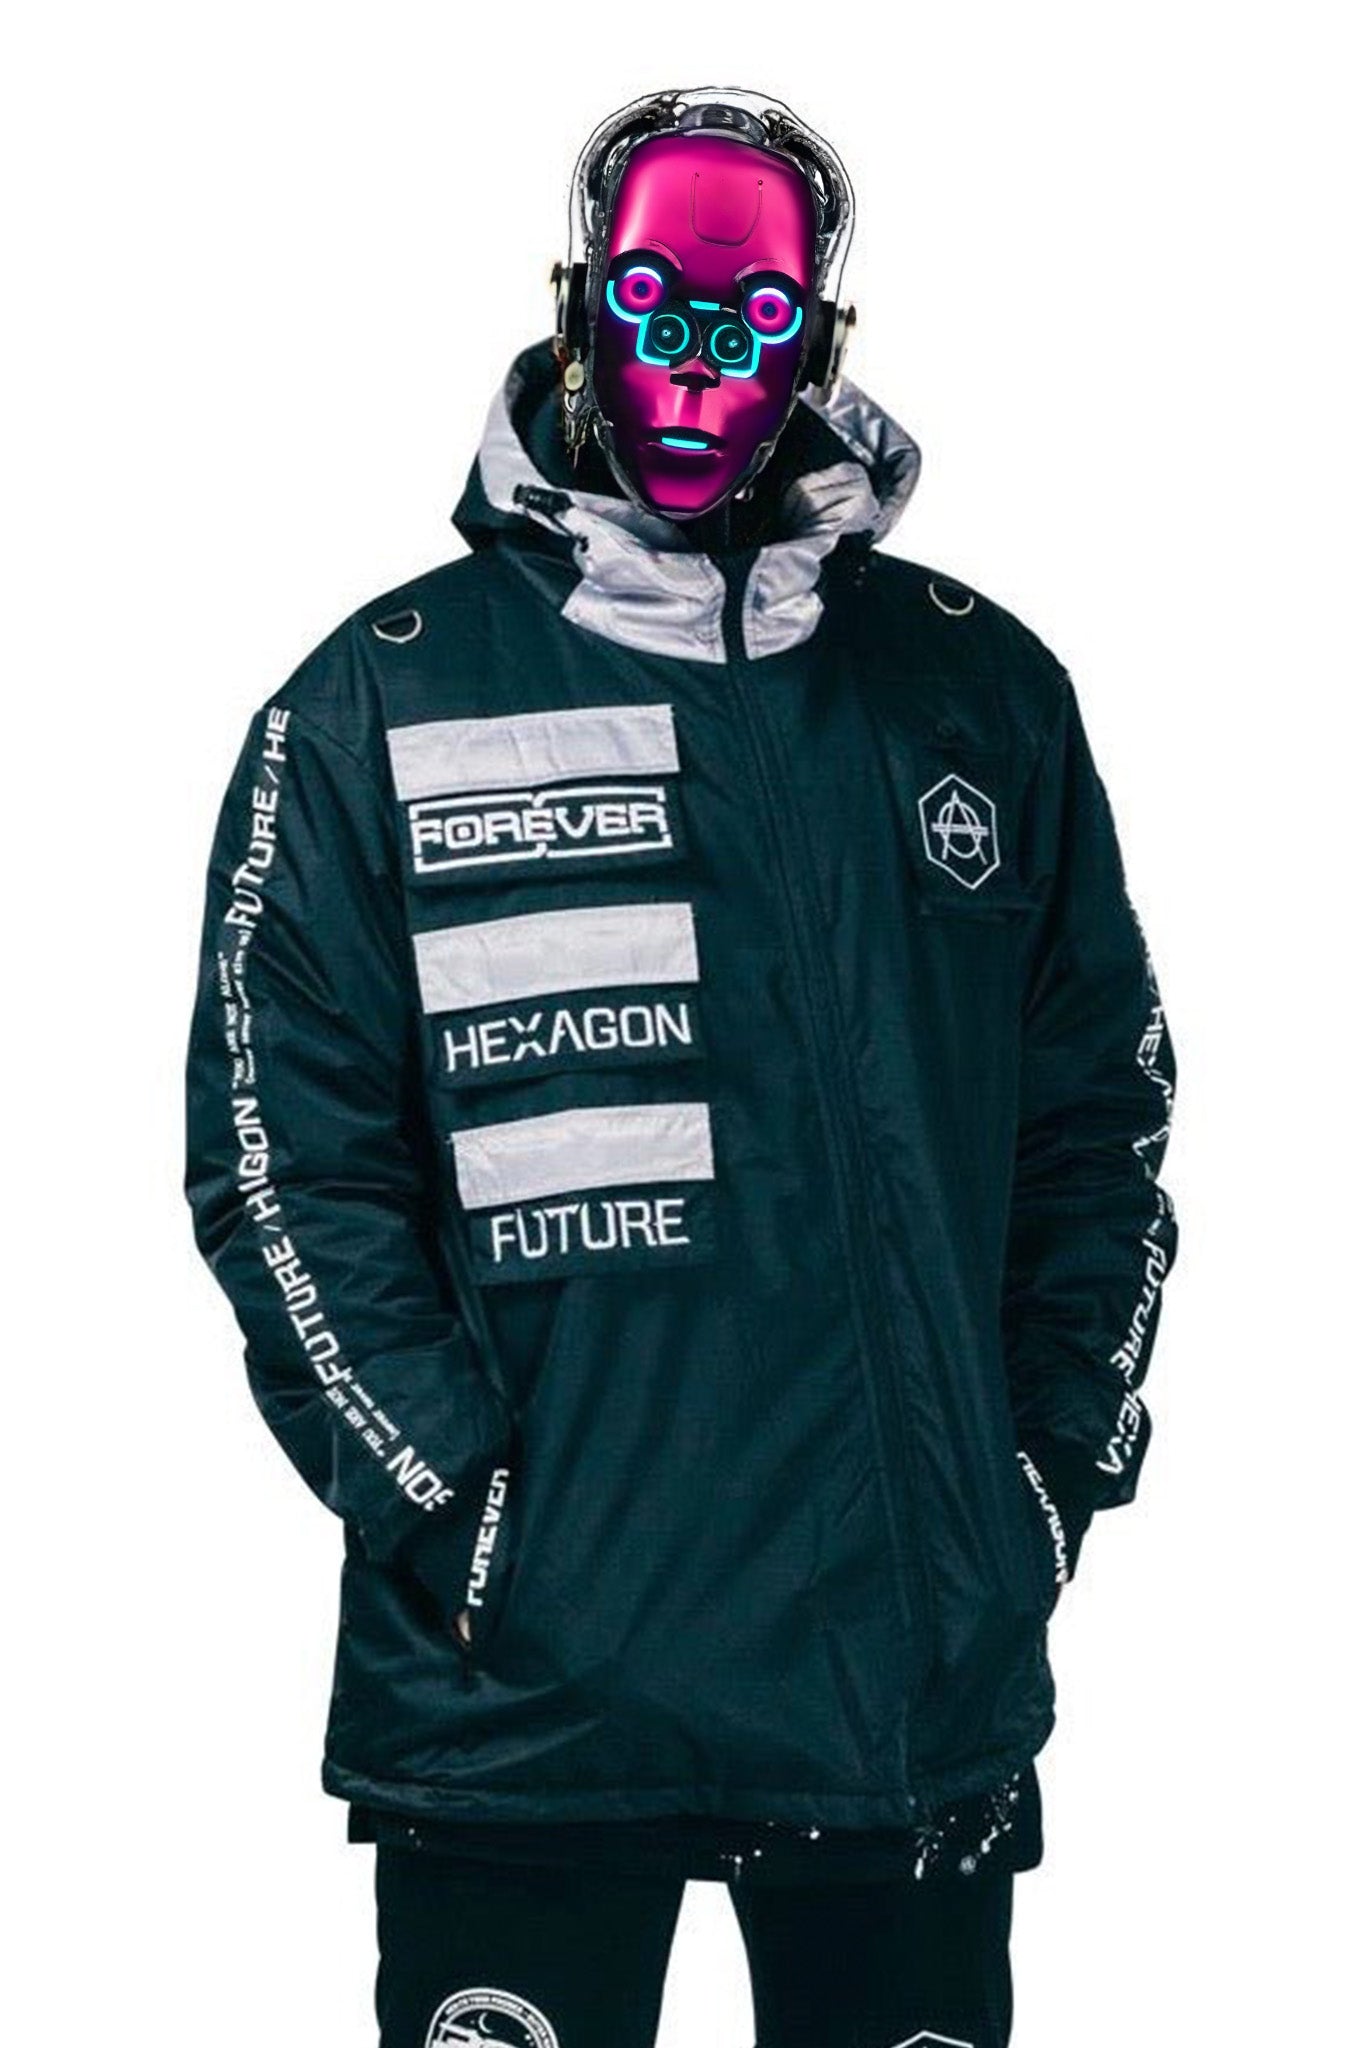 Hexagon winter jacket